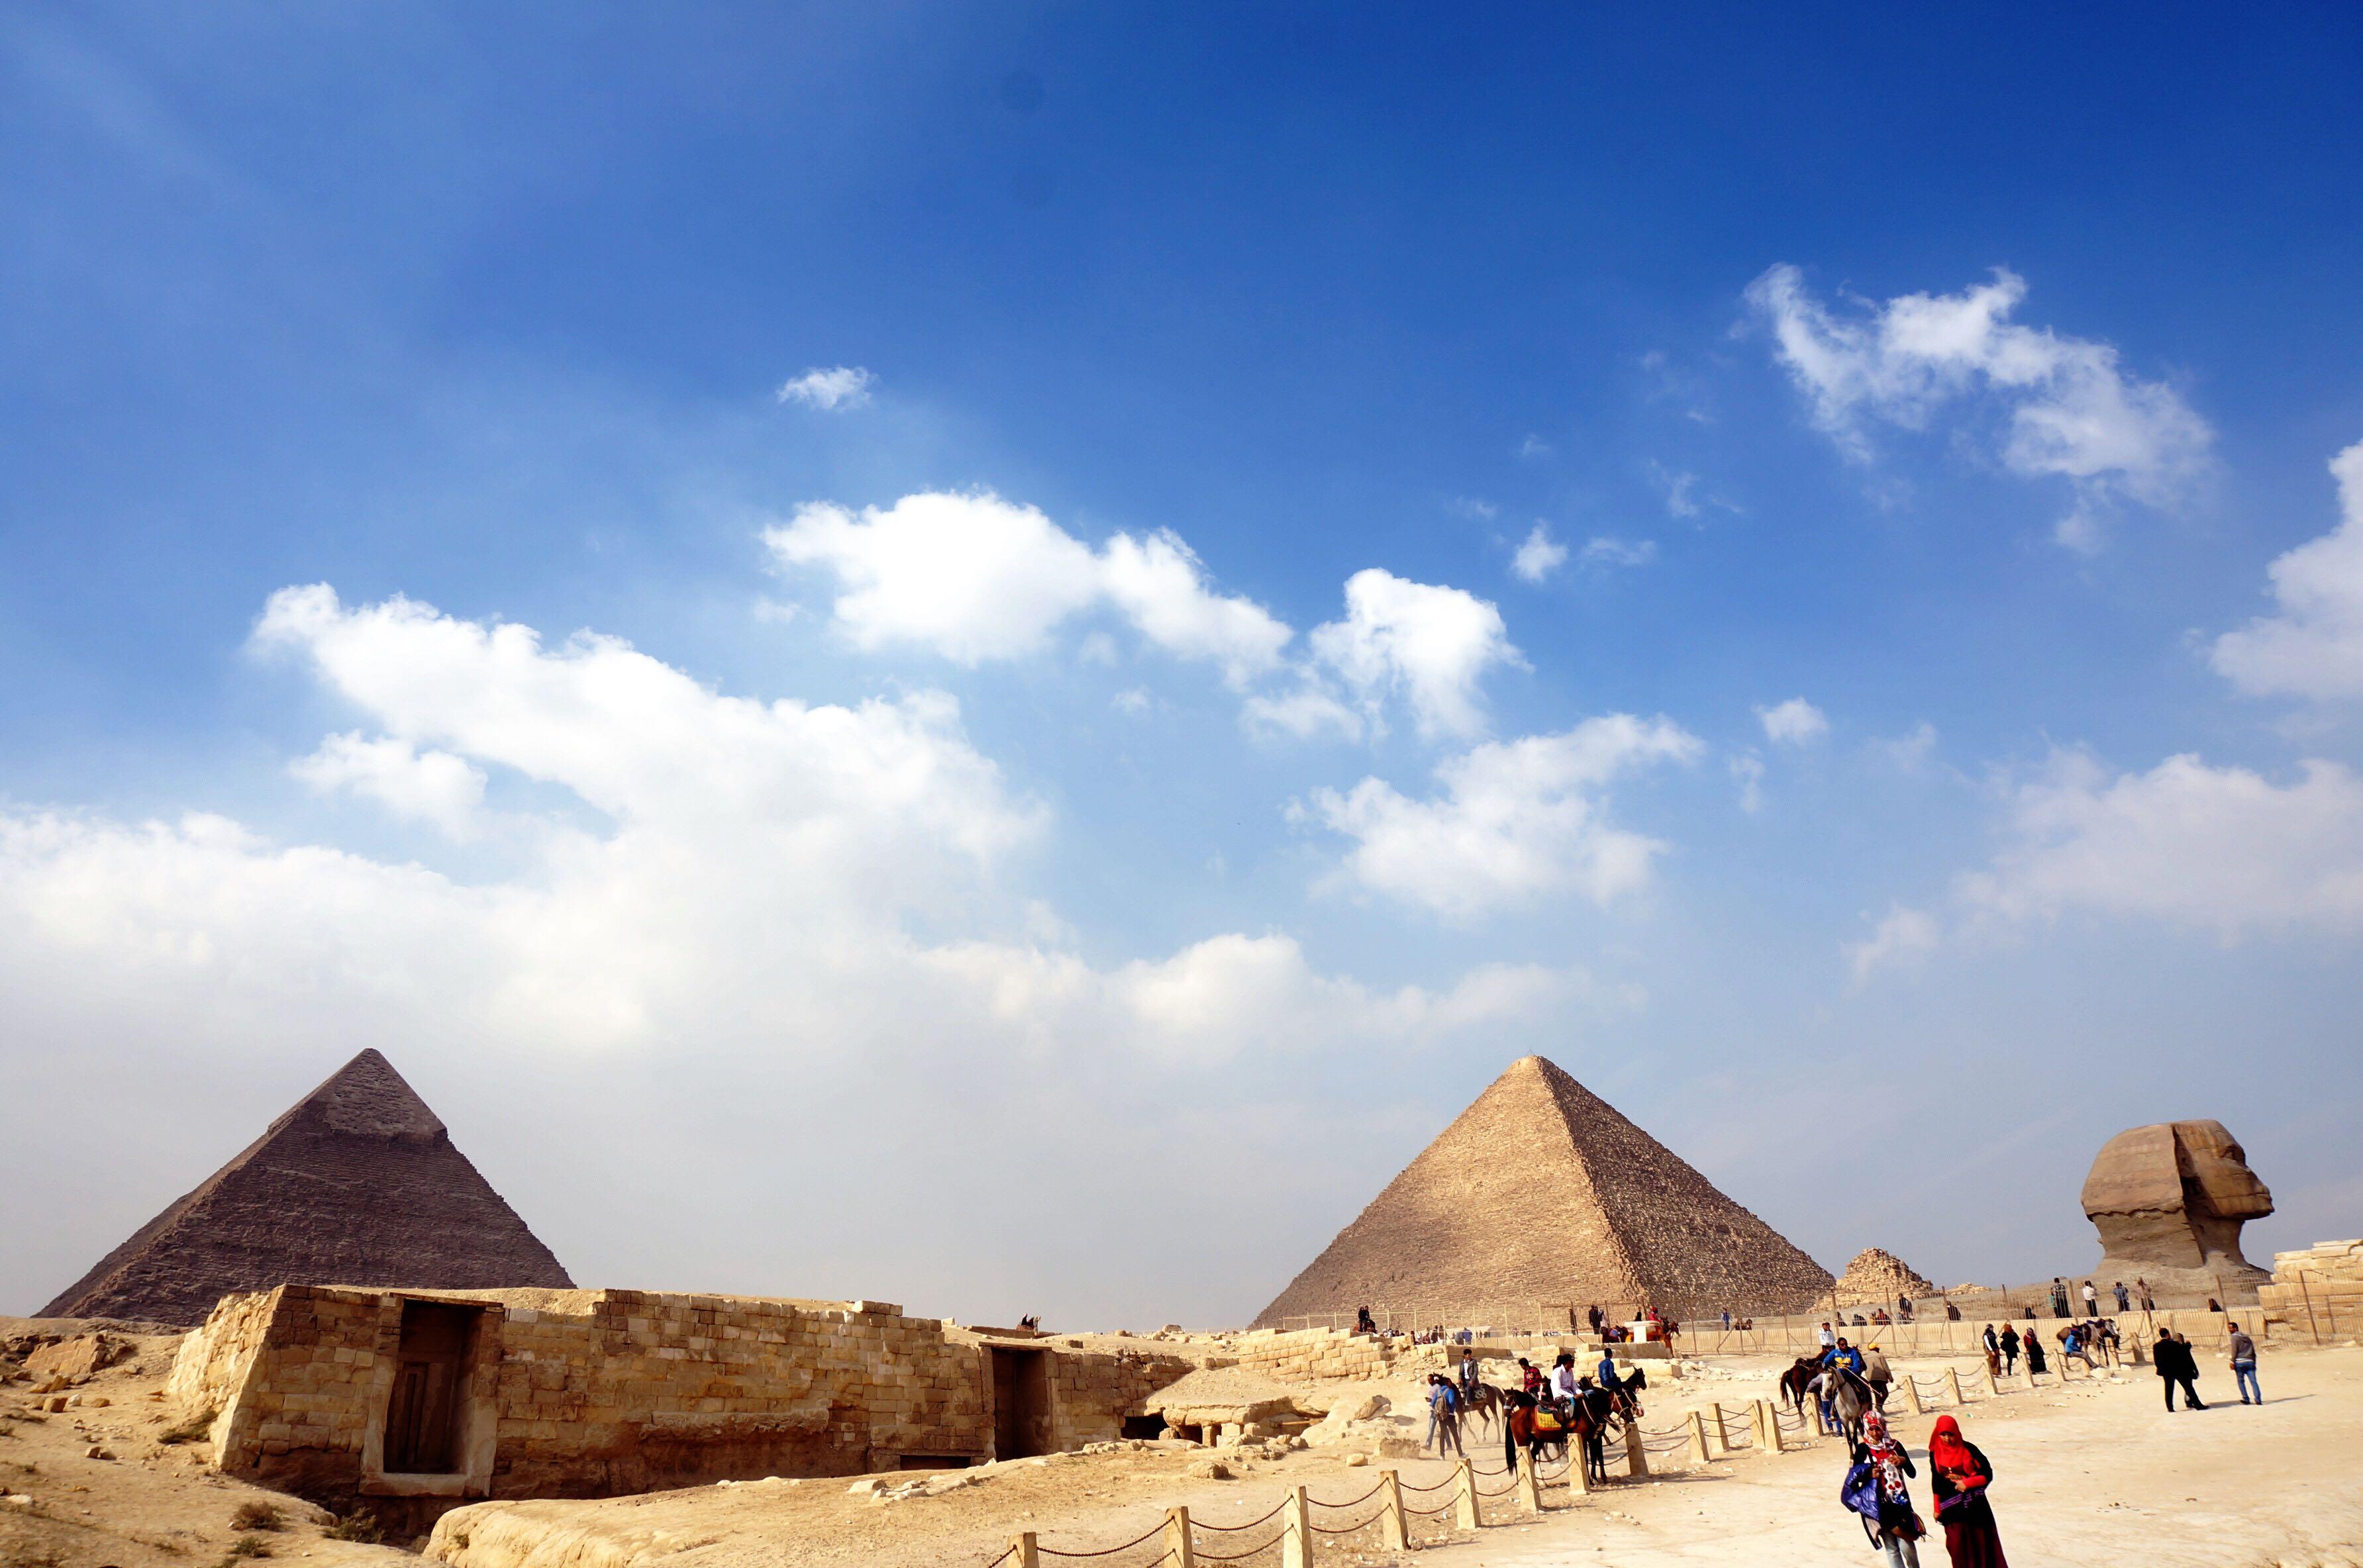 埃及金字塔高清壁纸图片-壁纸图片大全